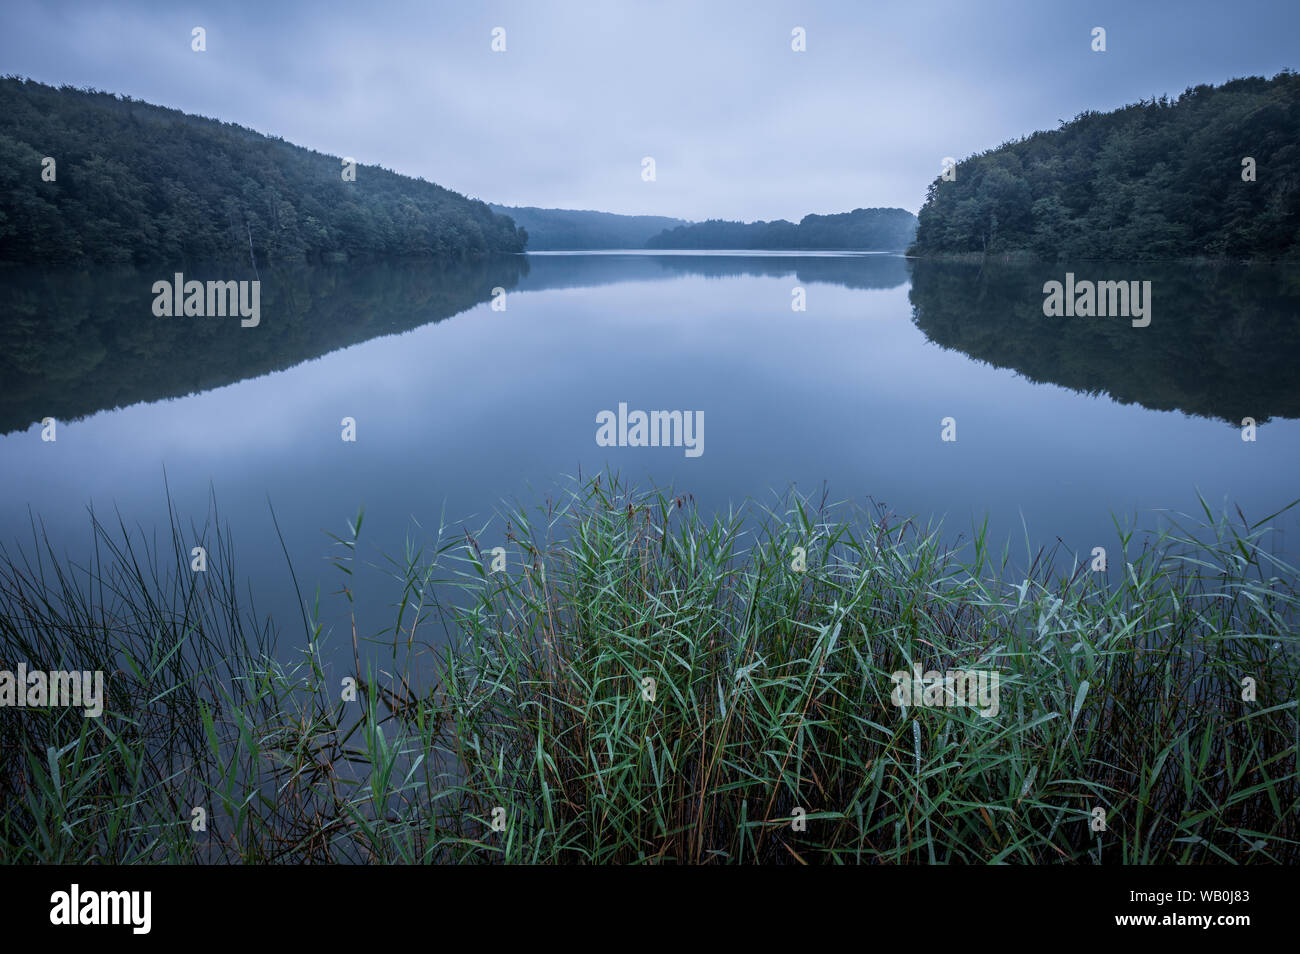 Friedliche und bewölkten Morgen am See Ukleisee mitten im Wald, im Vordergrund Reed, Eutin, Schleswig-Holstein, Deutschland Stockfoto